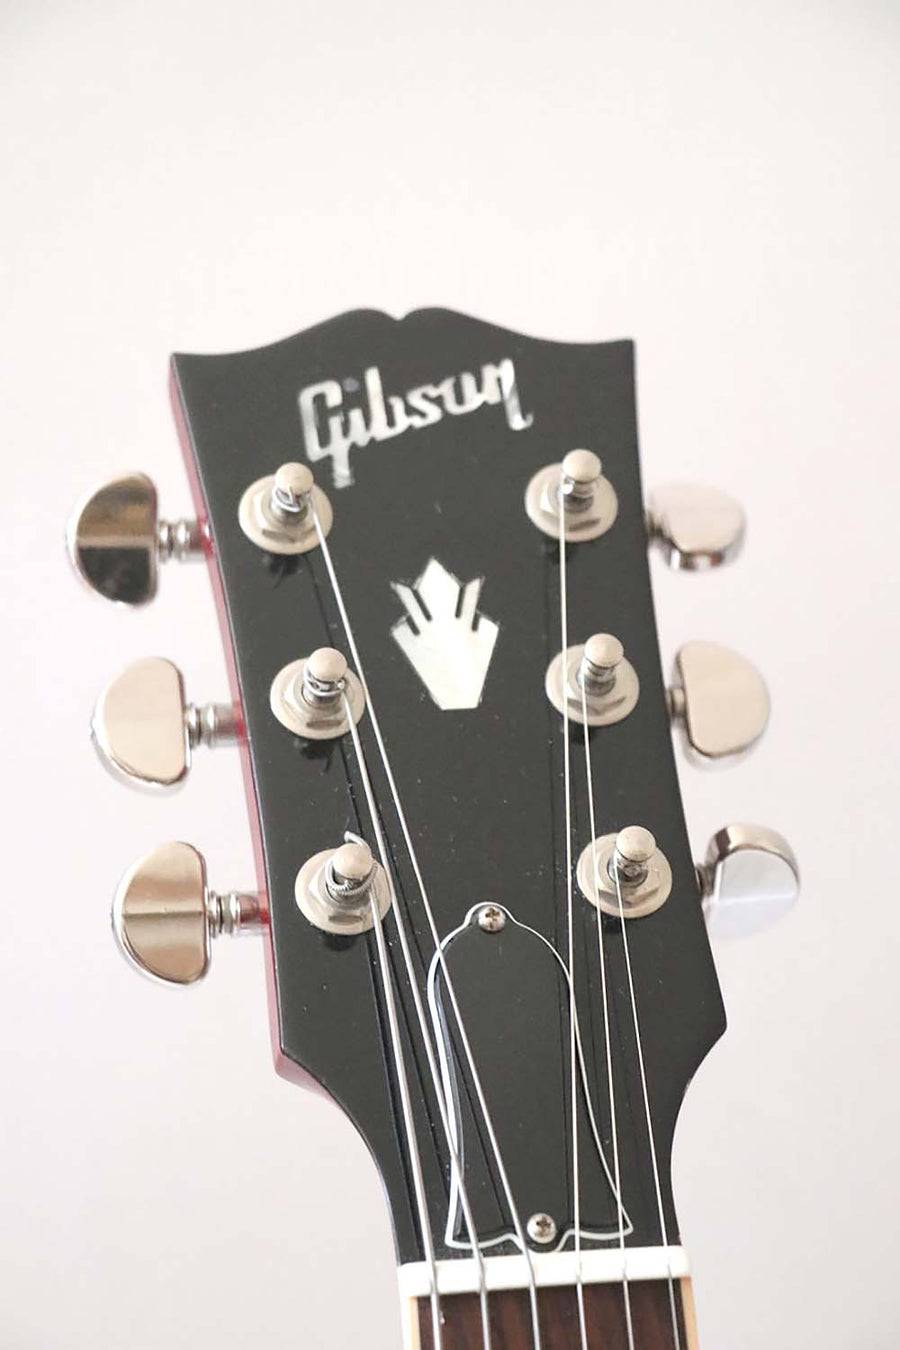 Gibson ES-335 Cherry 2010